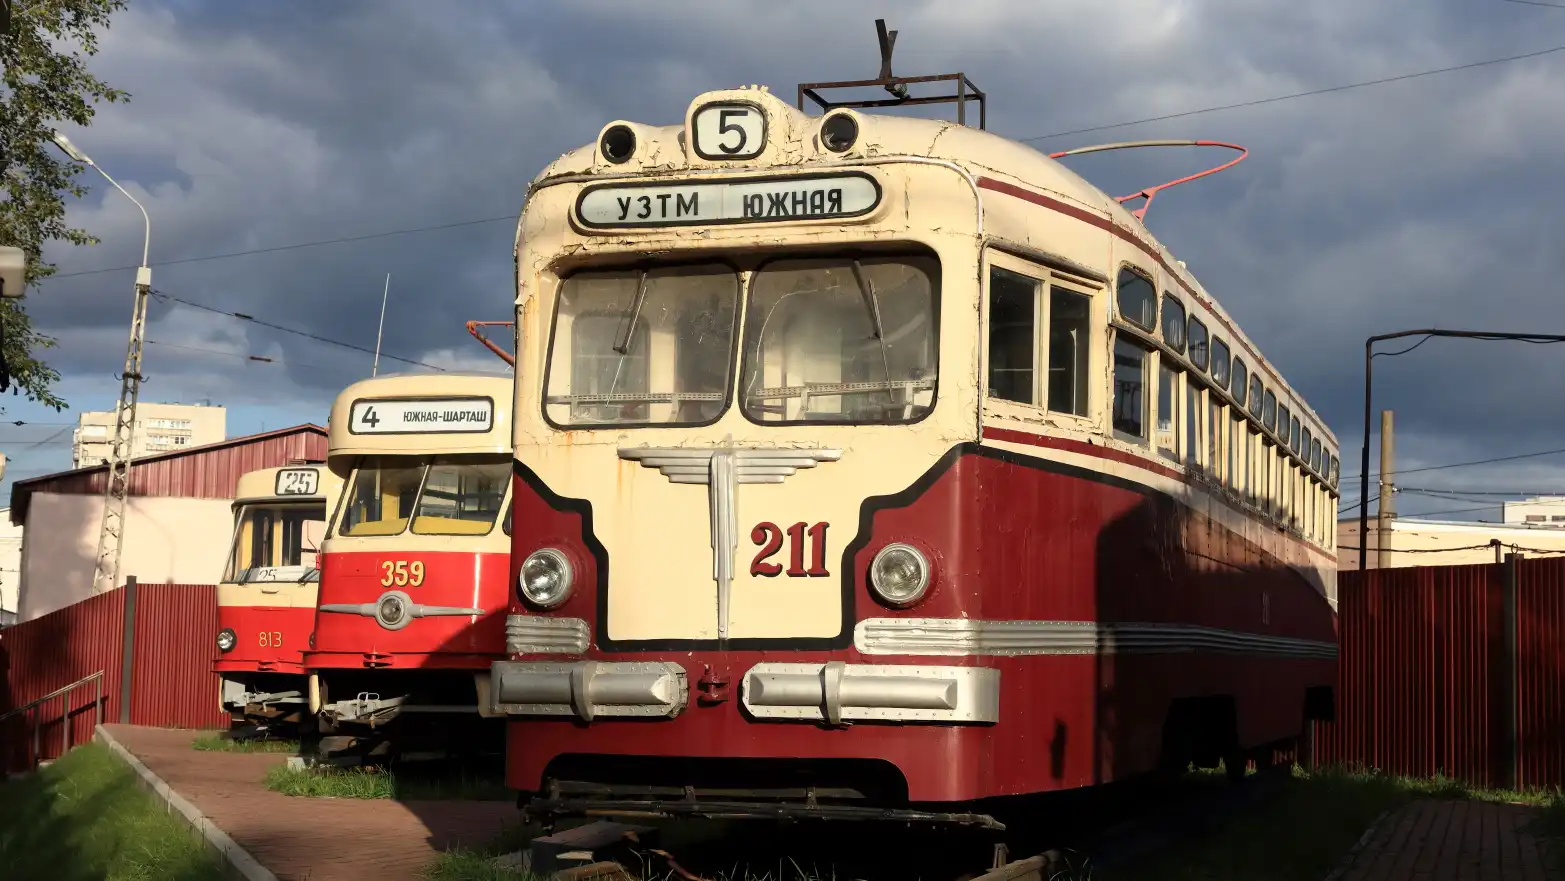 tři tramvaje z různých historických období